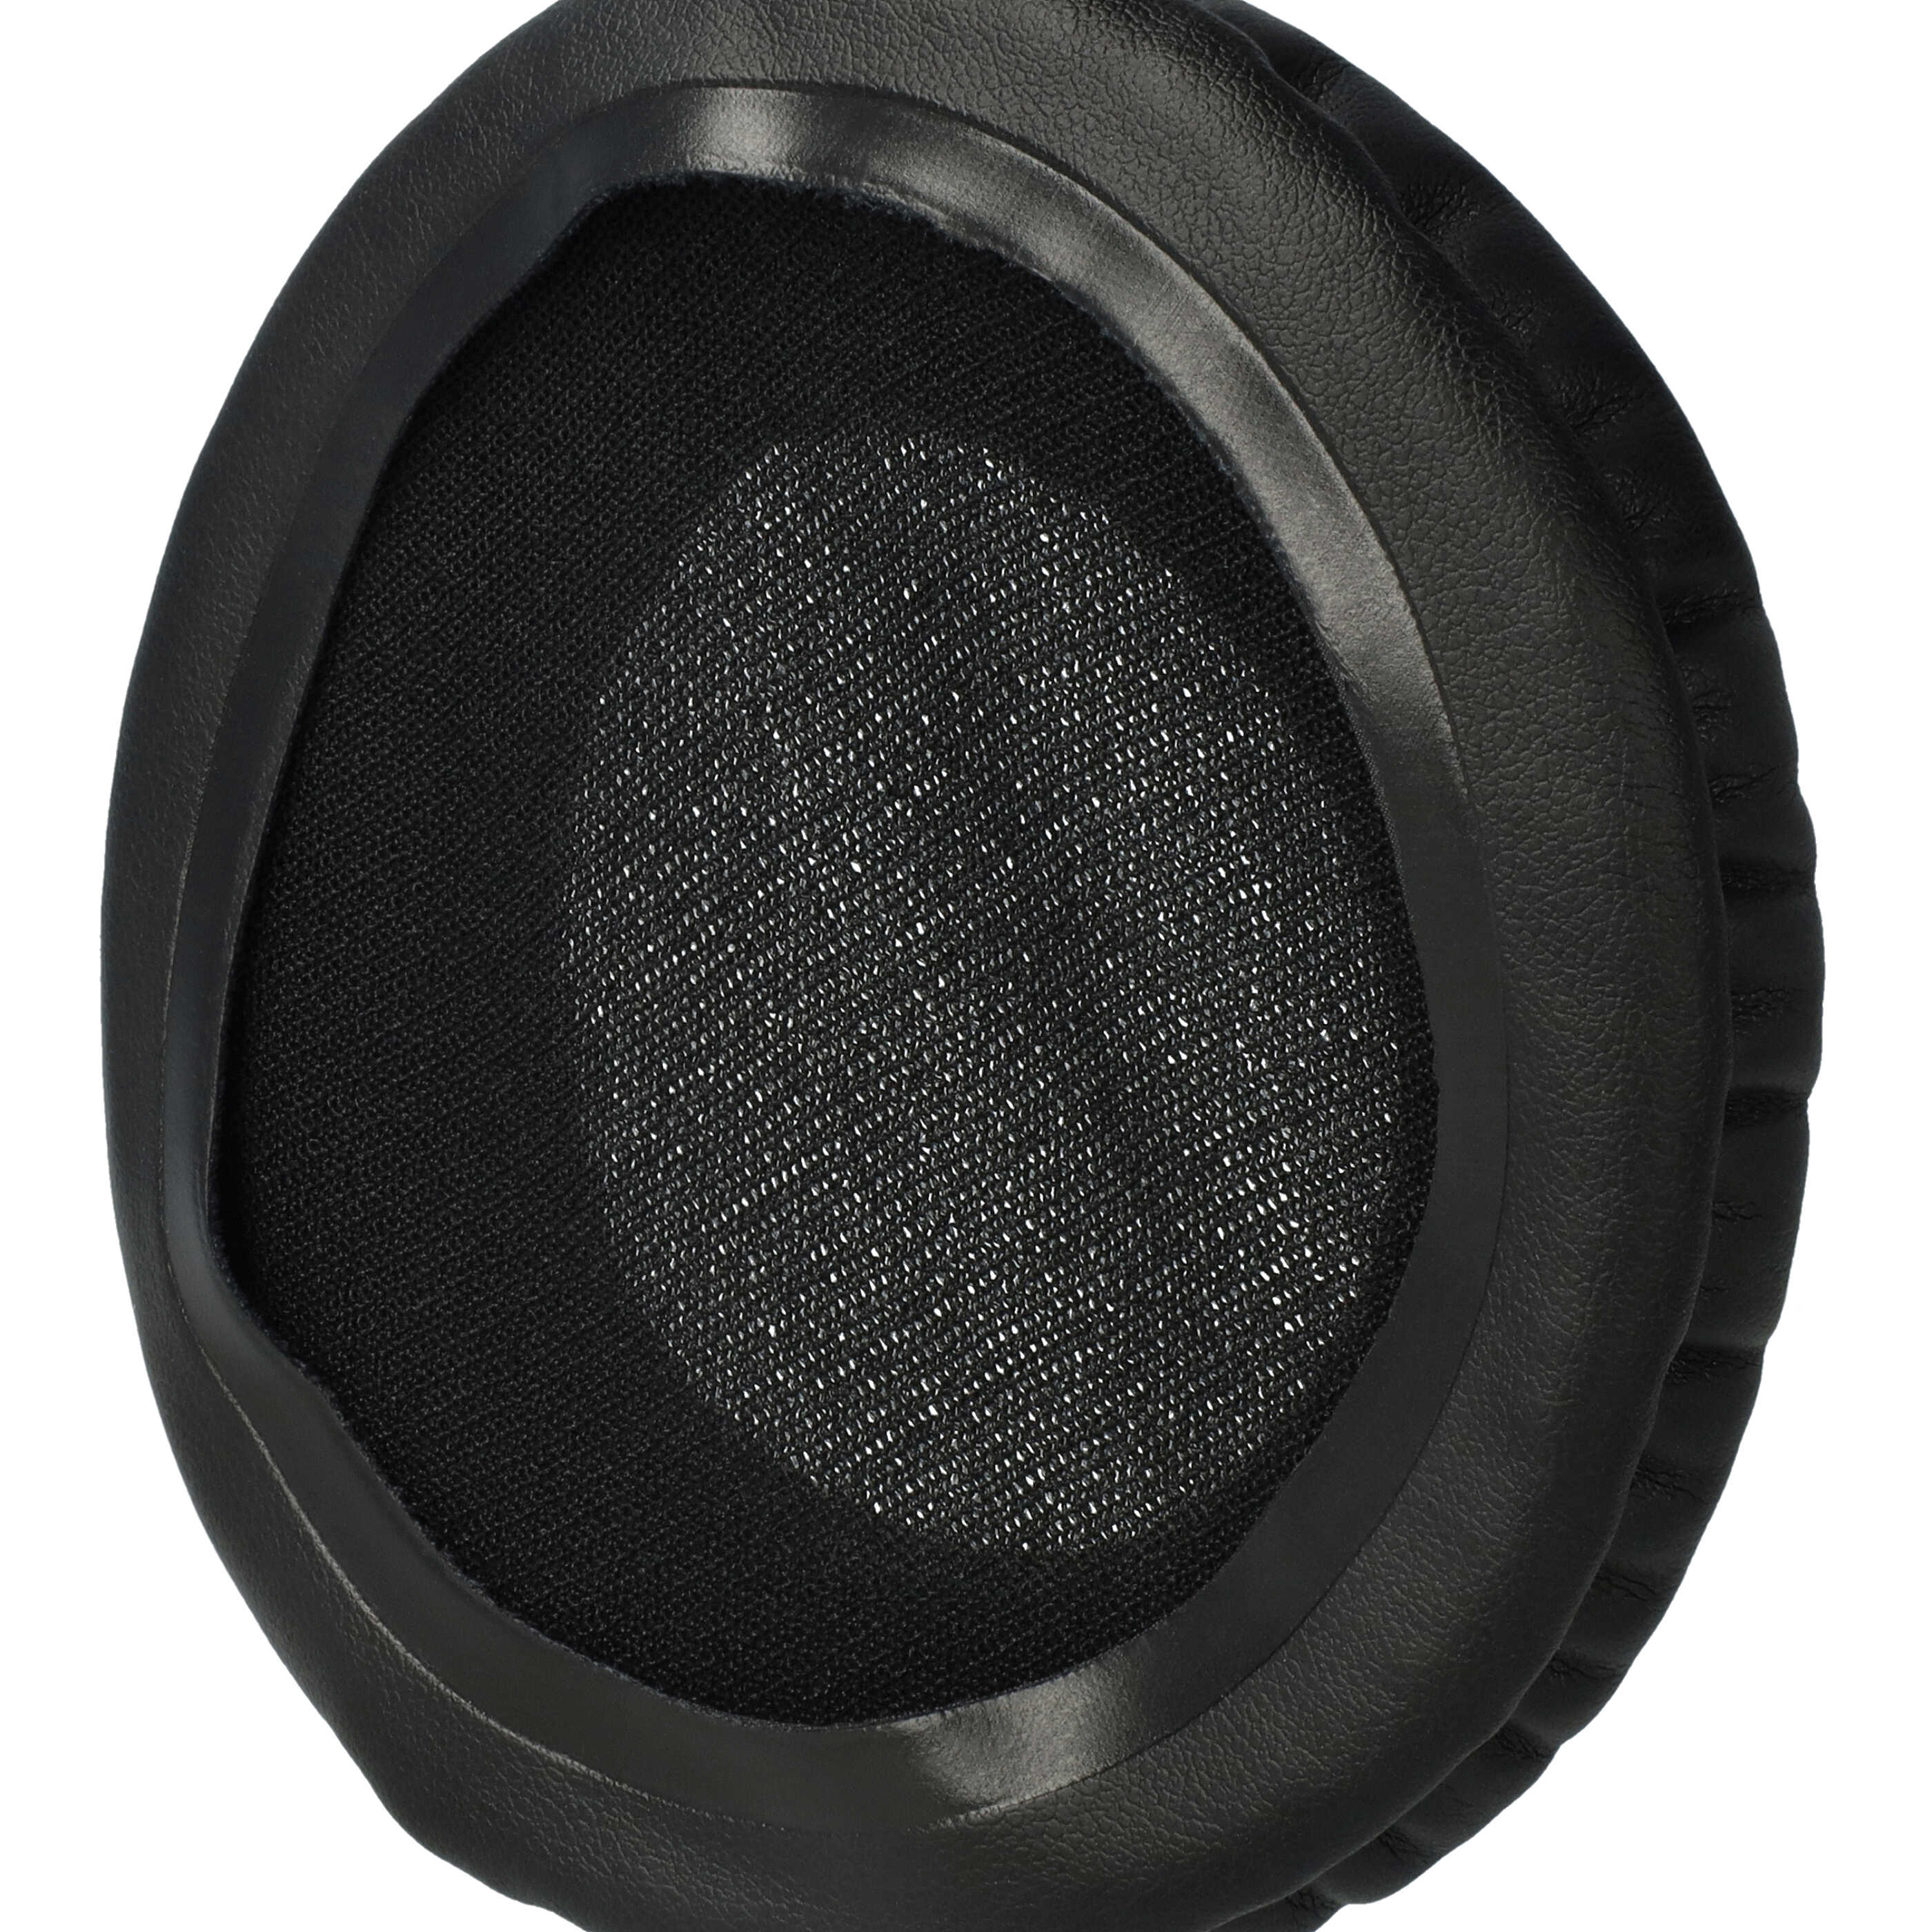 2x Almohadilla para auriculares Technics RP-DH1200, RPDH1200 - poliuretano / espuma negro